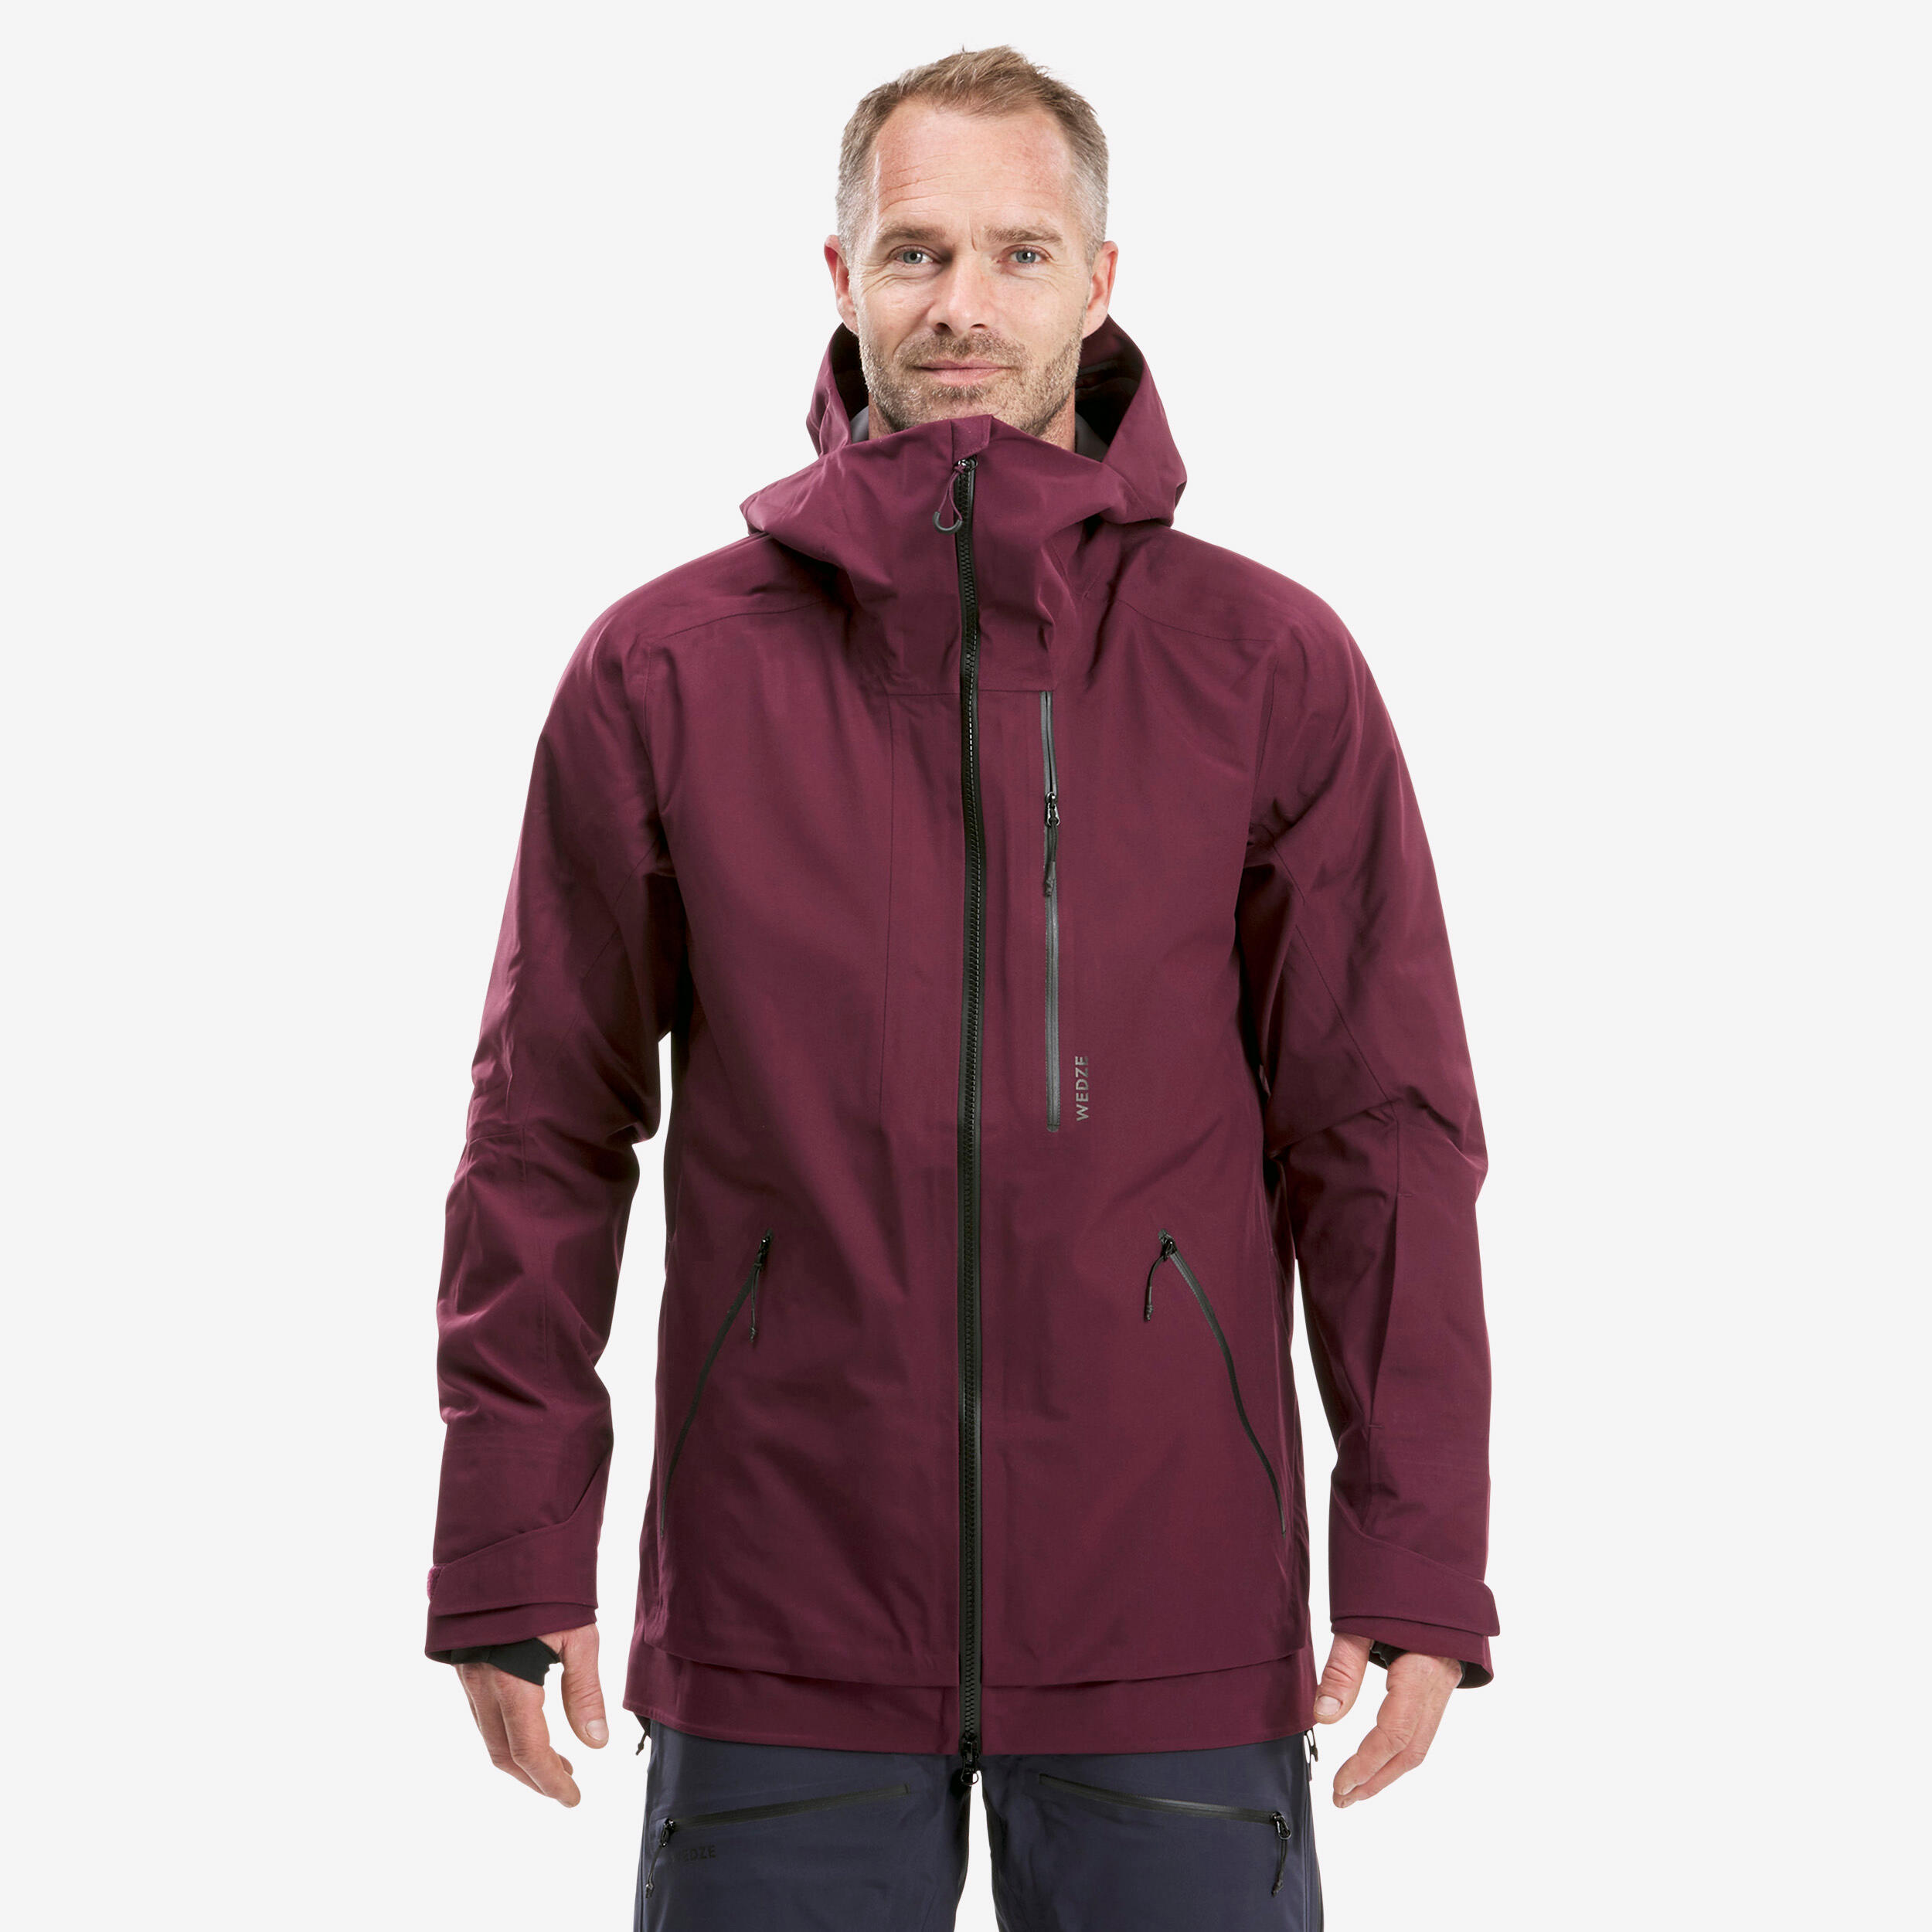 WEDZE Men's Ski Jacket - FR500 - Bordeaux